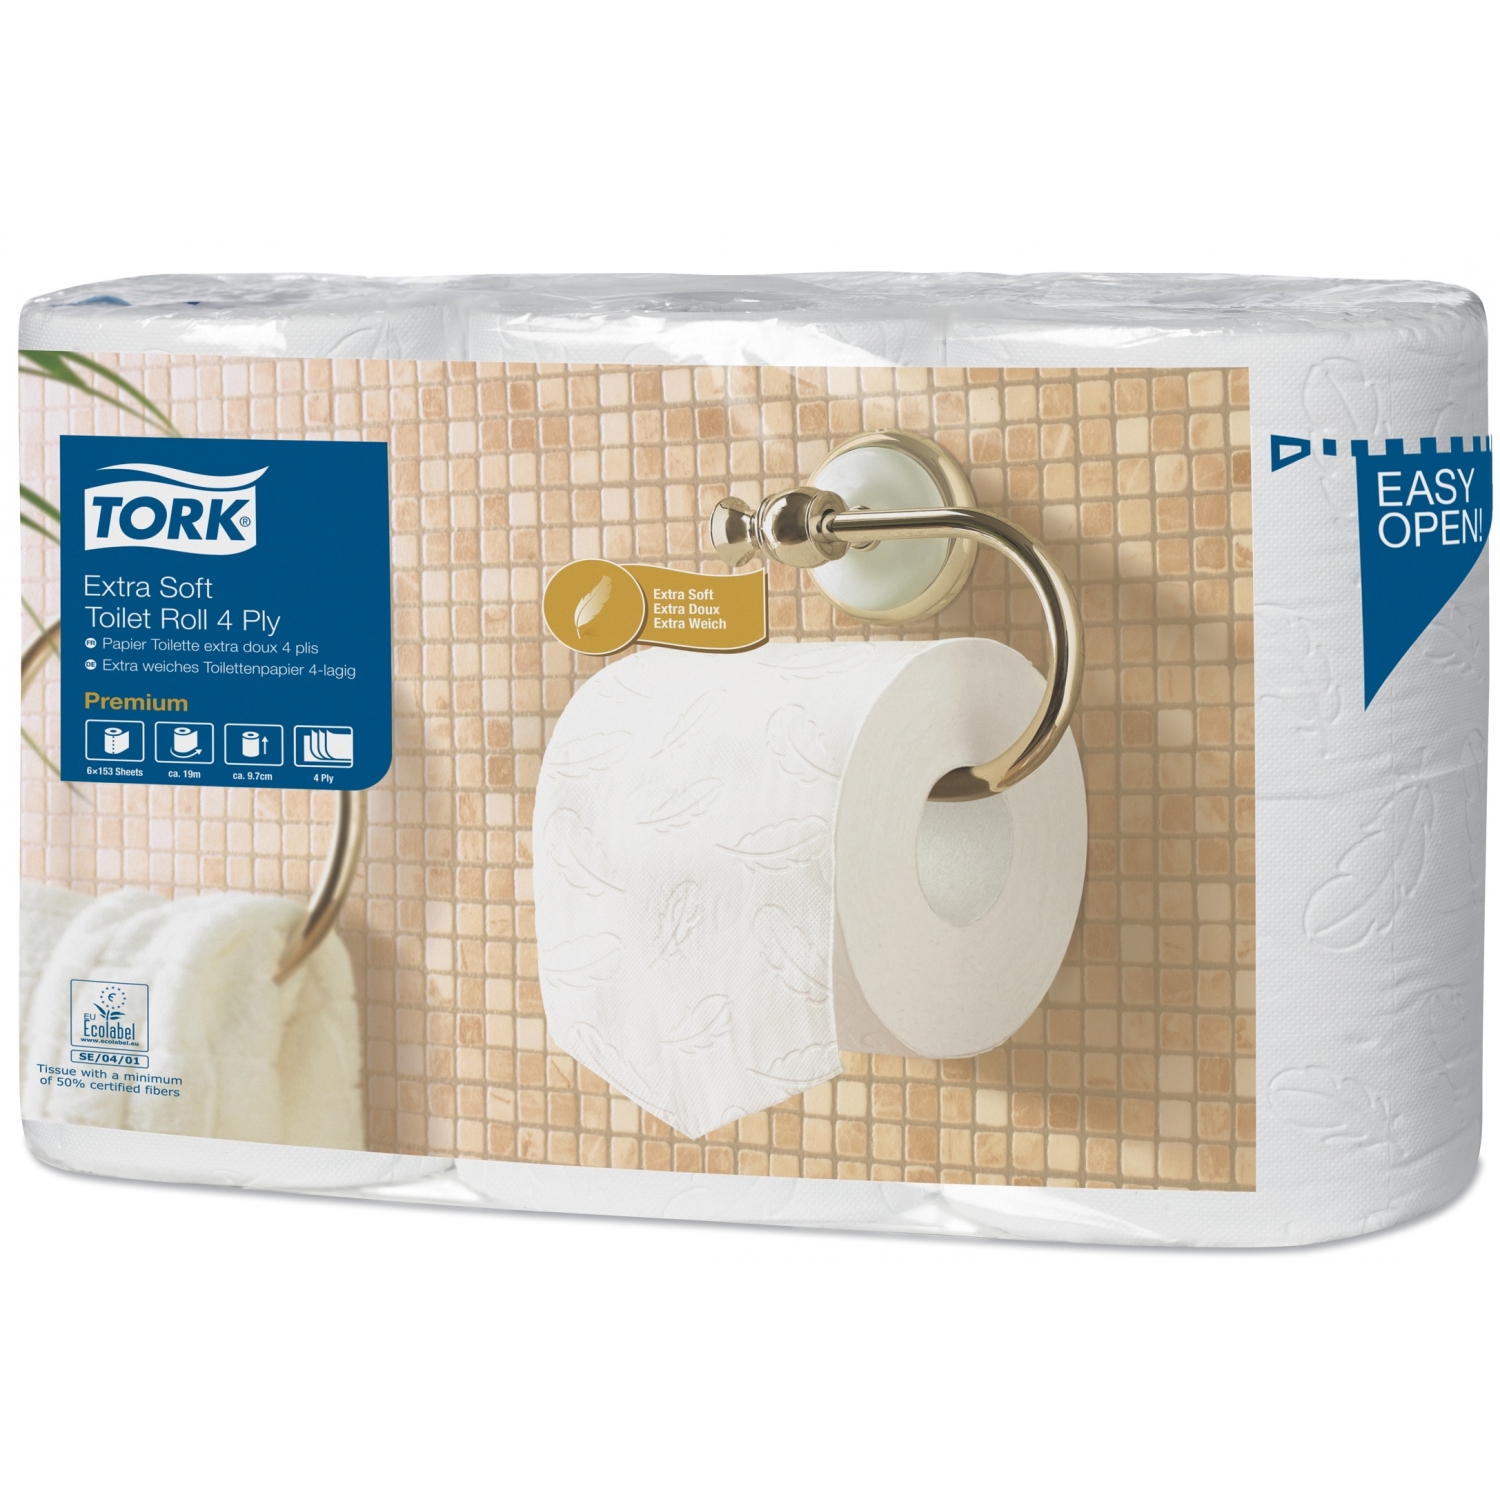 Tork rouleaux papier de toilette - premium extra doux (7 x 6 rl)